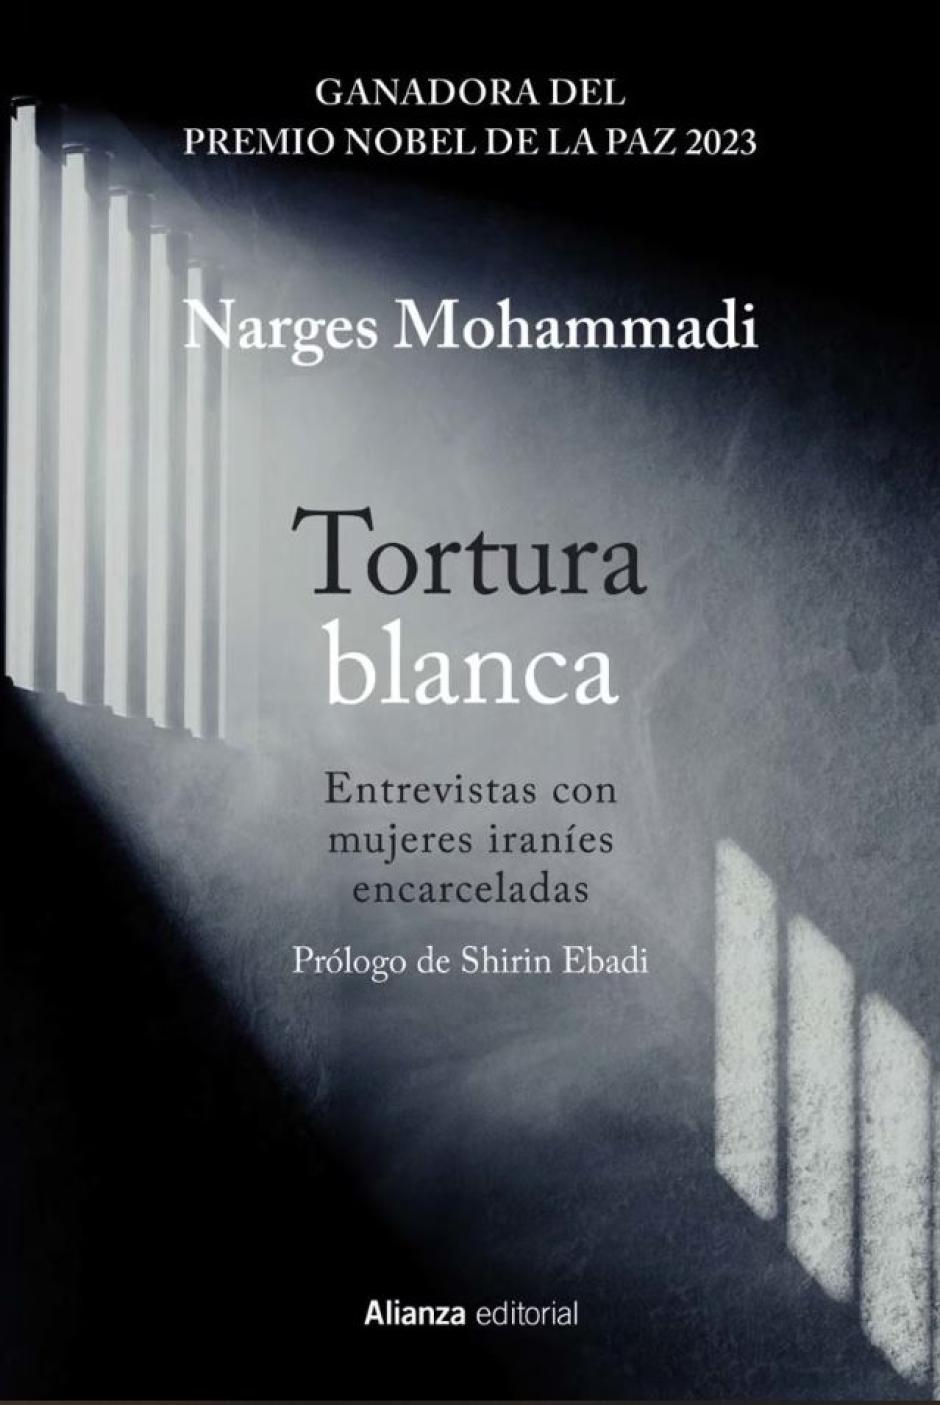 'Tortura blanca: Entrevistas con mujeres iraníes encarceladas', de Narges Mohammadi, Premio Nobel de la Paz